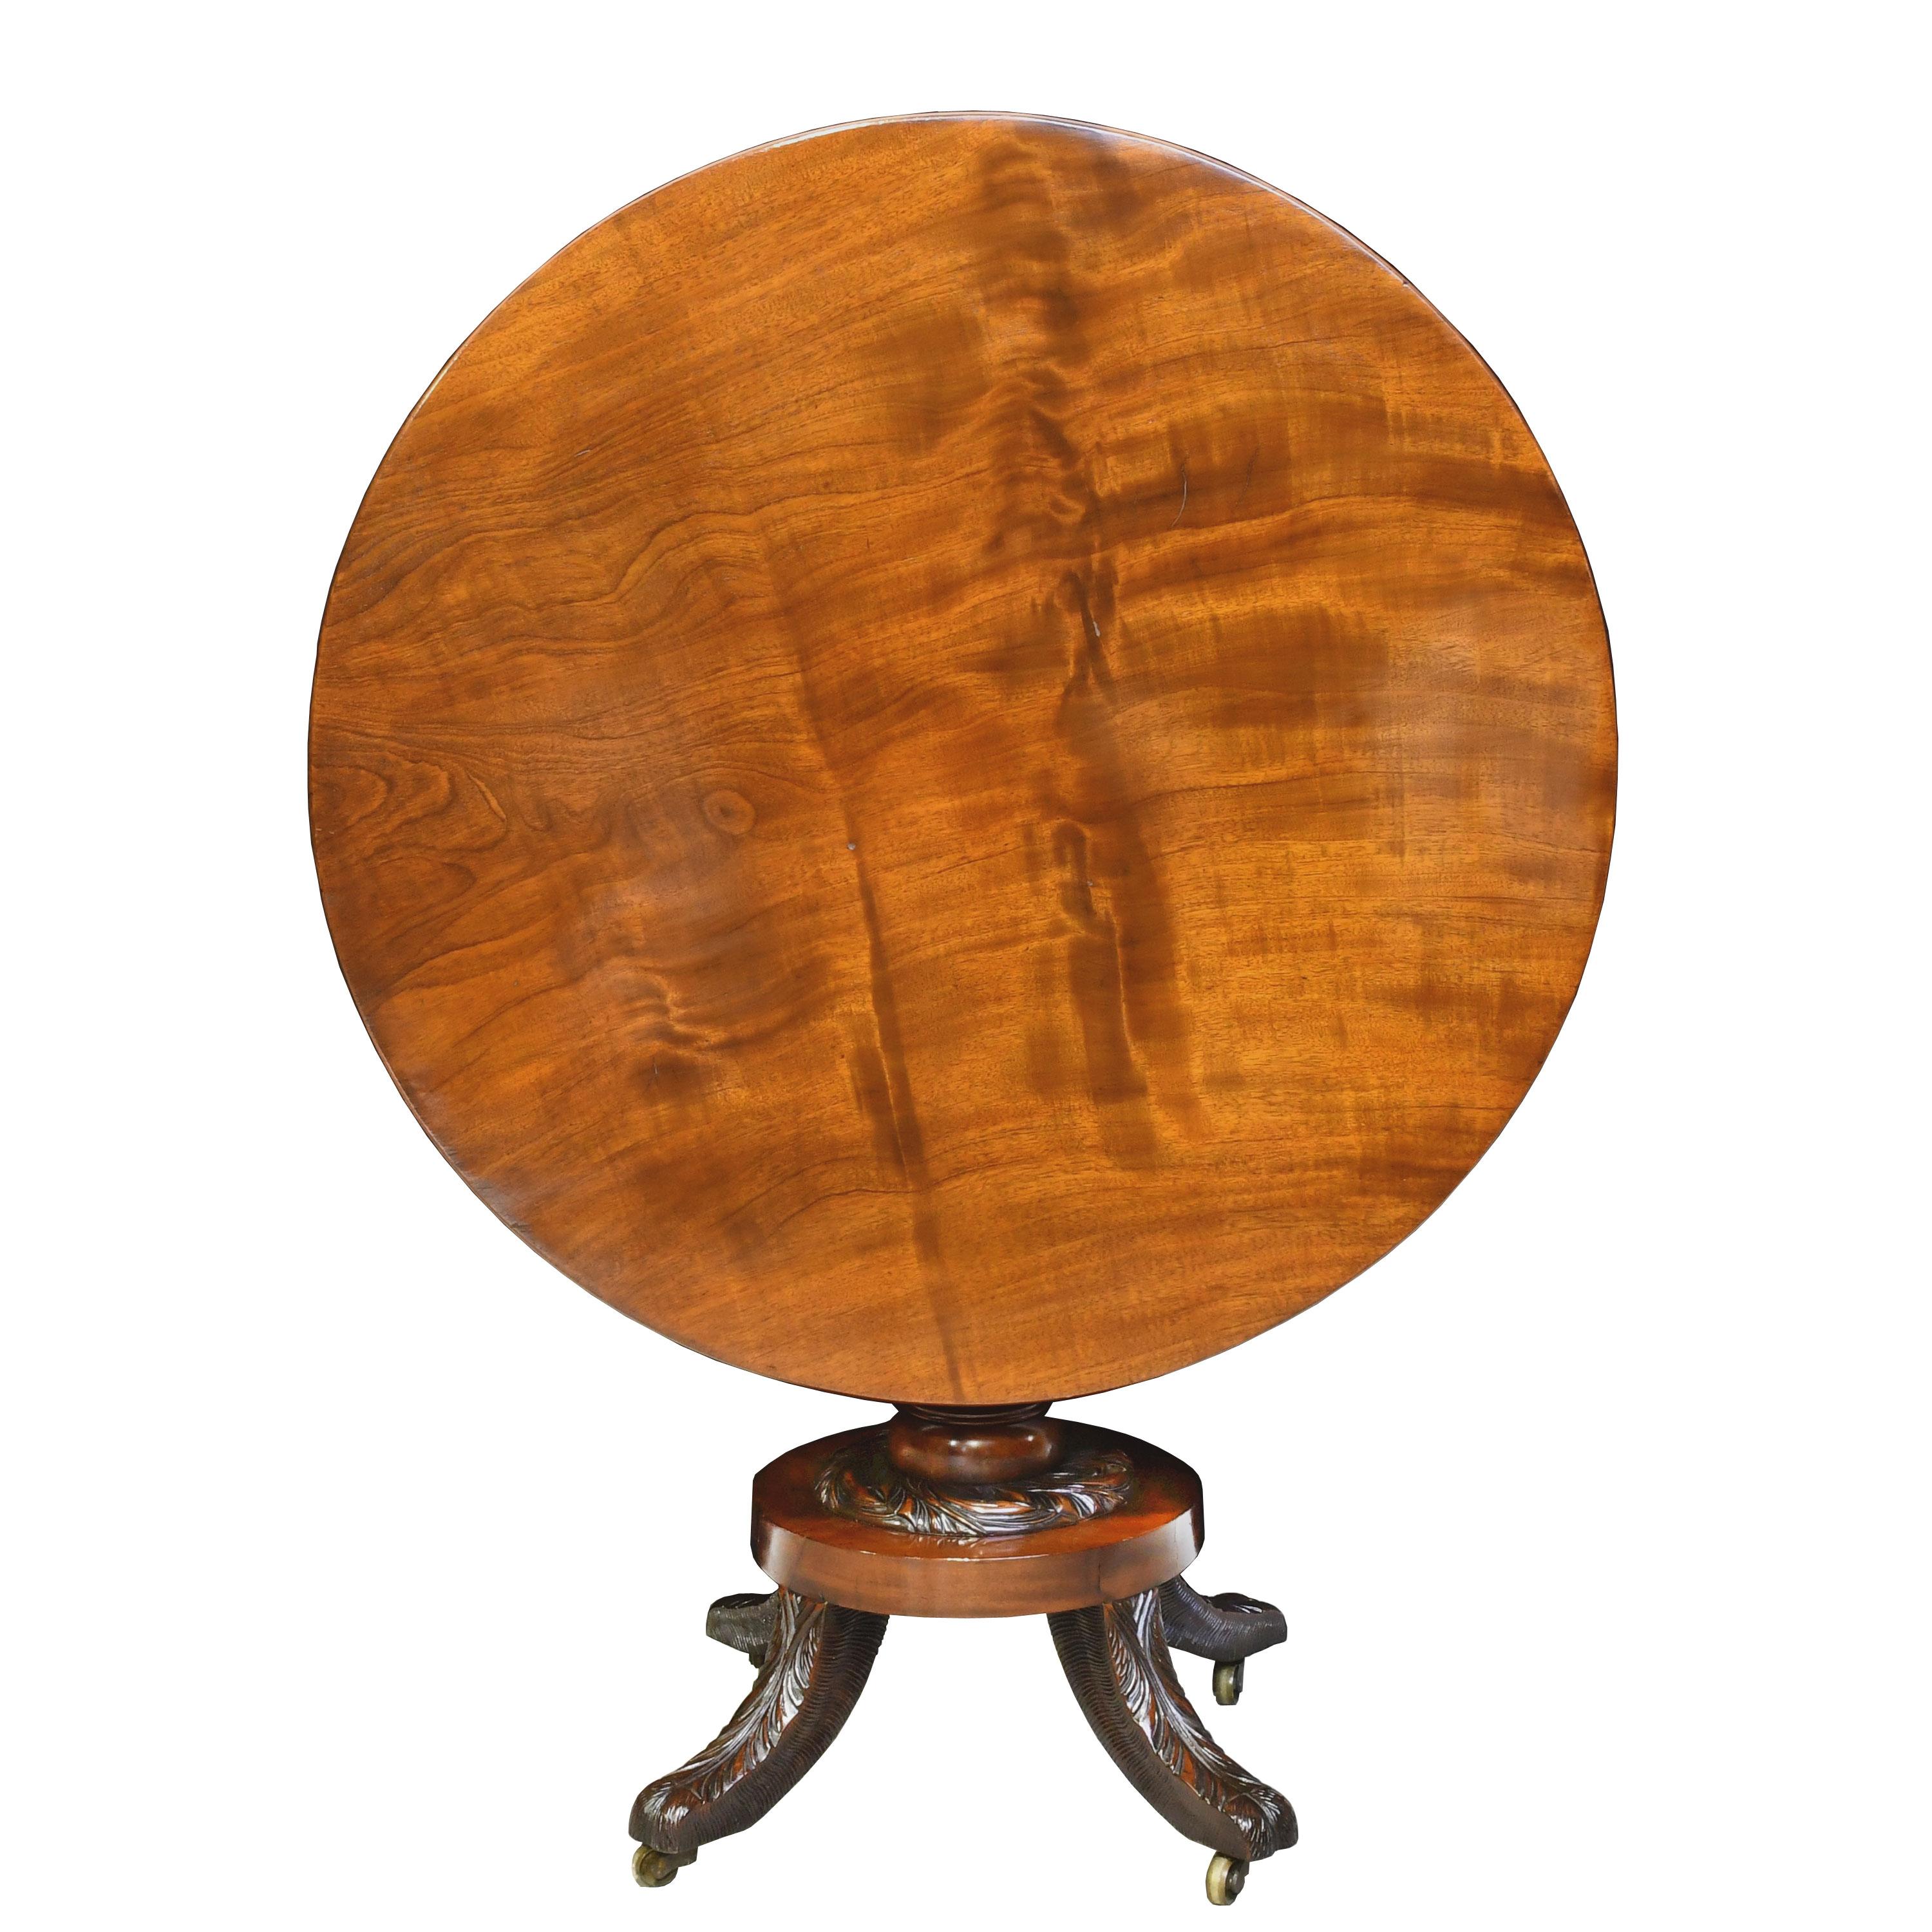 Ein sehr schöner runder Tisch im neoklassischen Stil aus feinem westindischen Mahagoni. New York, um 1820. Dieser föderalistische Tisch ist wunderschön gearbeitet, mit gut gegliederten Schnitzereien von Tabakblättern entlang der Mittelsäule und an